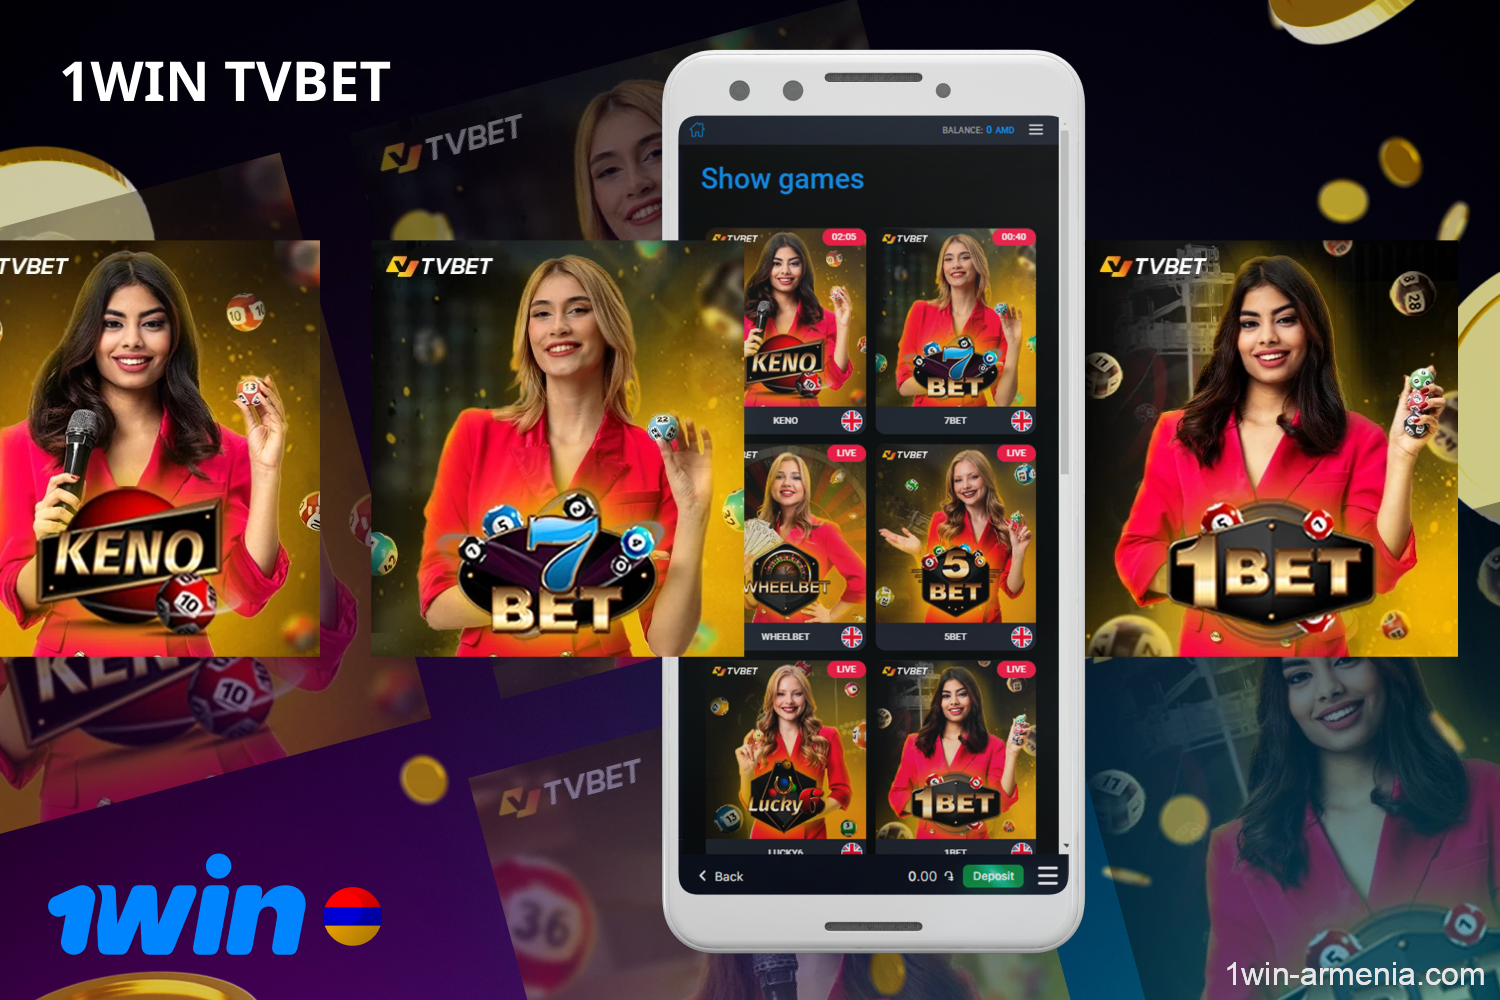 1win TVBet-ի պաշտոնական կայքը առաջարկում է բացառիկ ուղիղ հեռարձակումներ և սեղանի խաղեր Հայաստանի բնակիչների համար